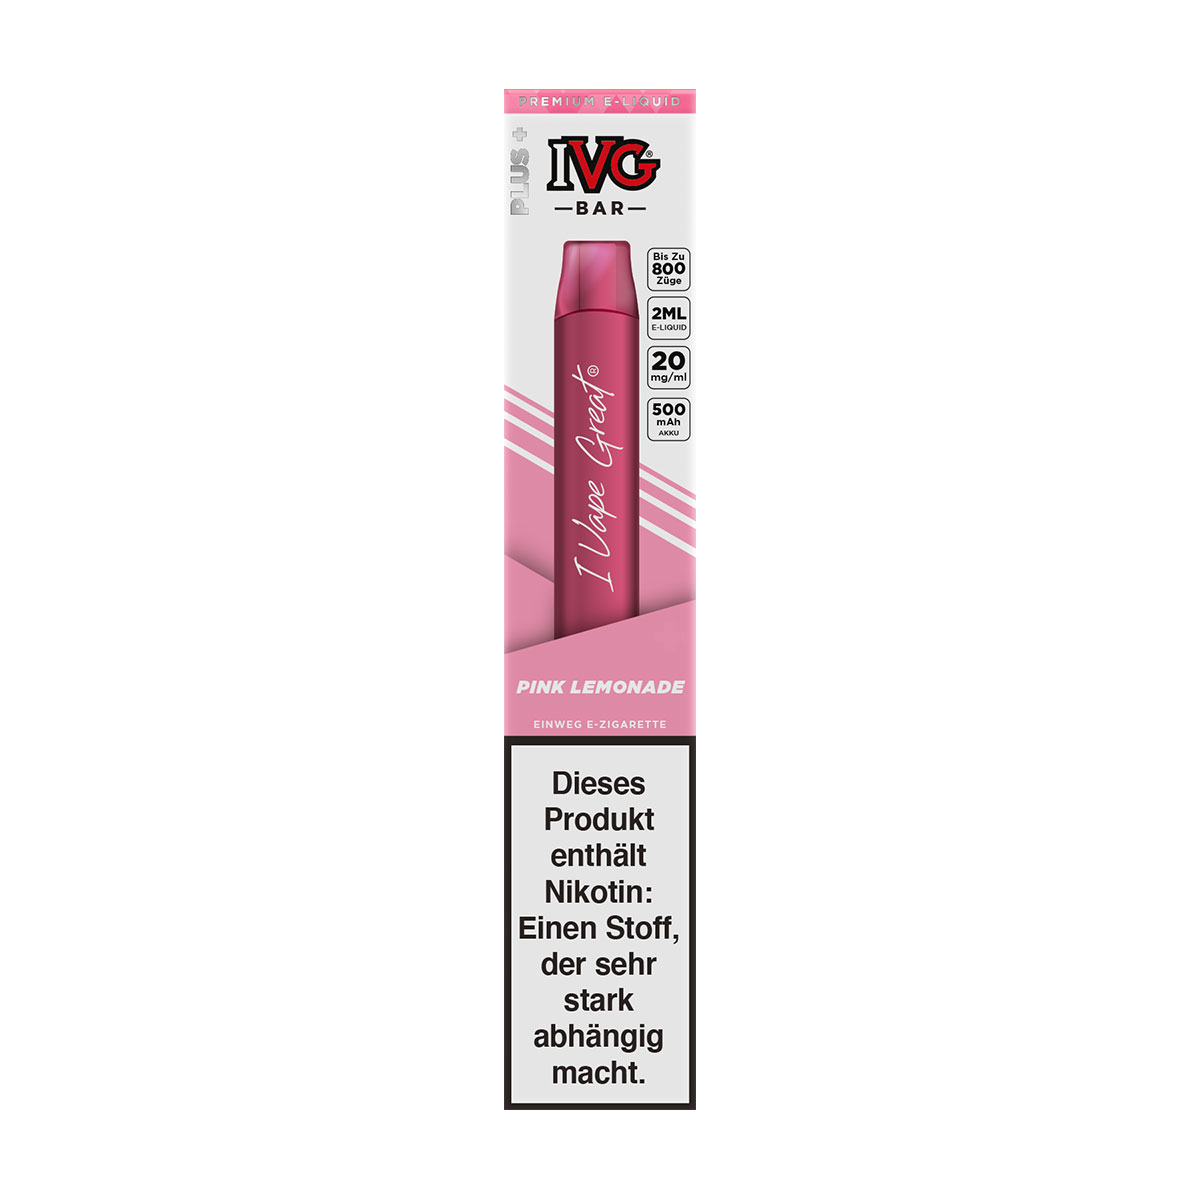 IVG BAR Pink Lemonade Einweg E-Zigarette 20mg/ml *Abverkauf*